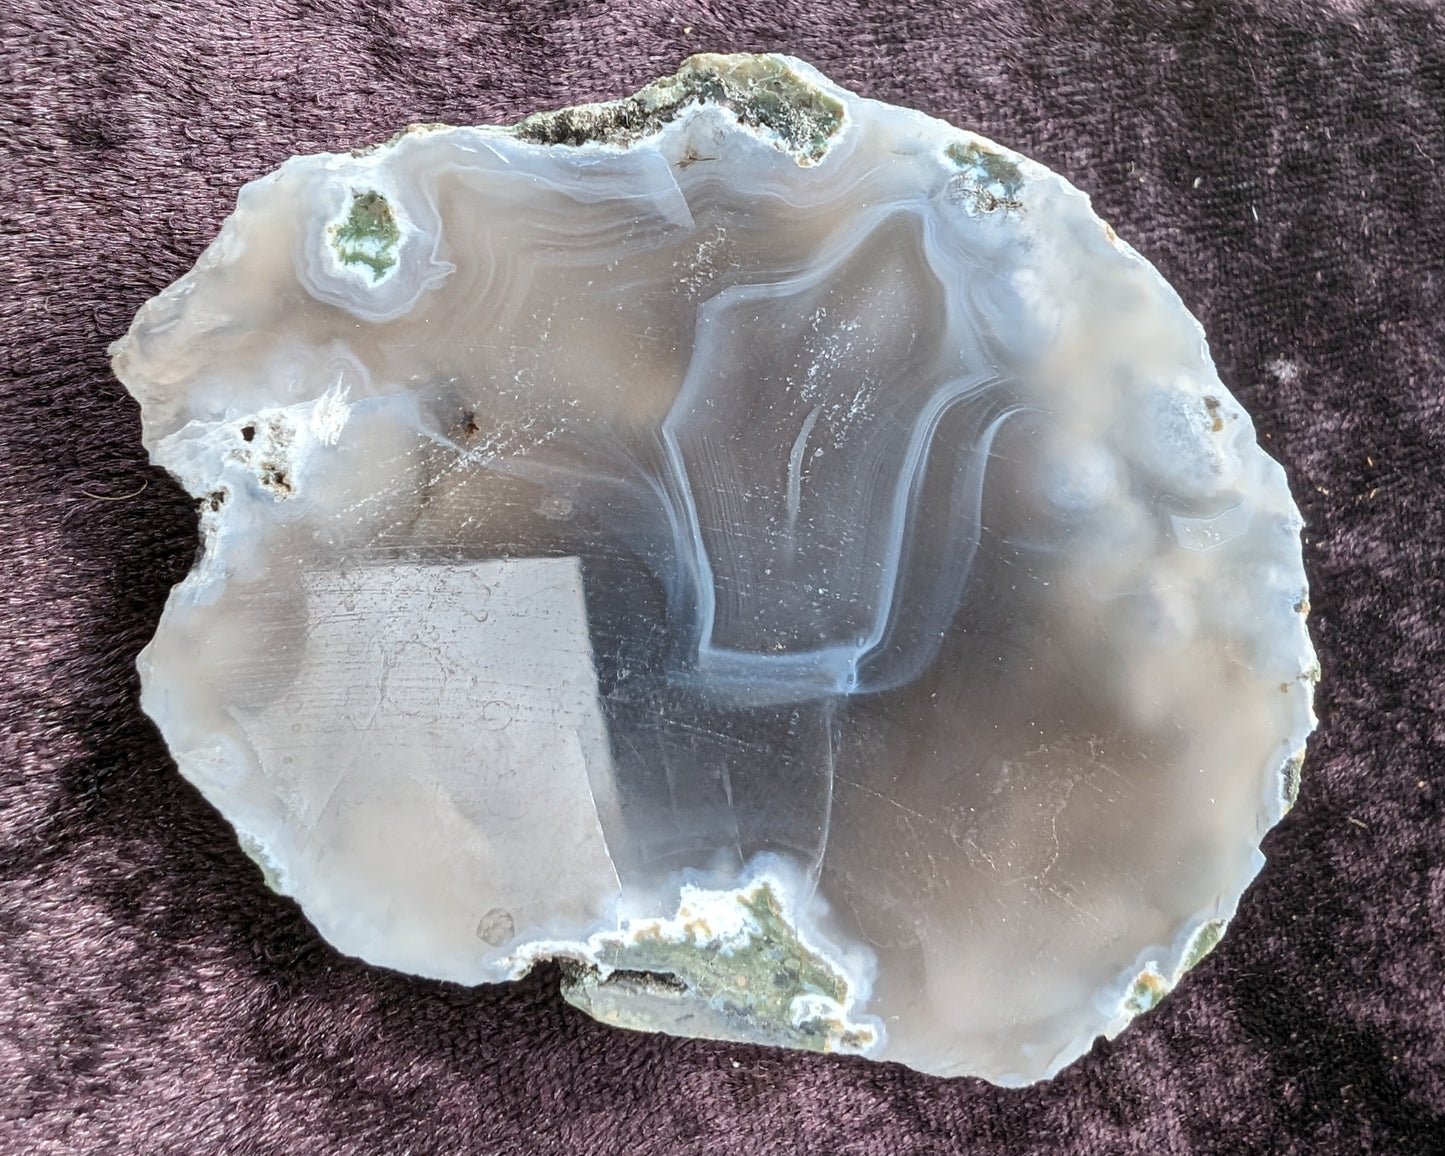 Agate ocean-rock-pool geode slice 94g